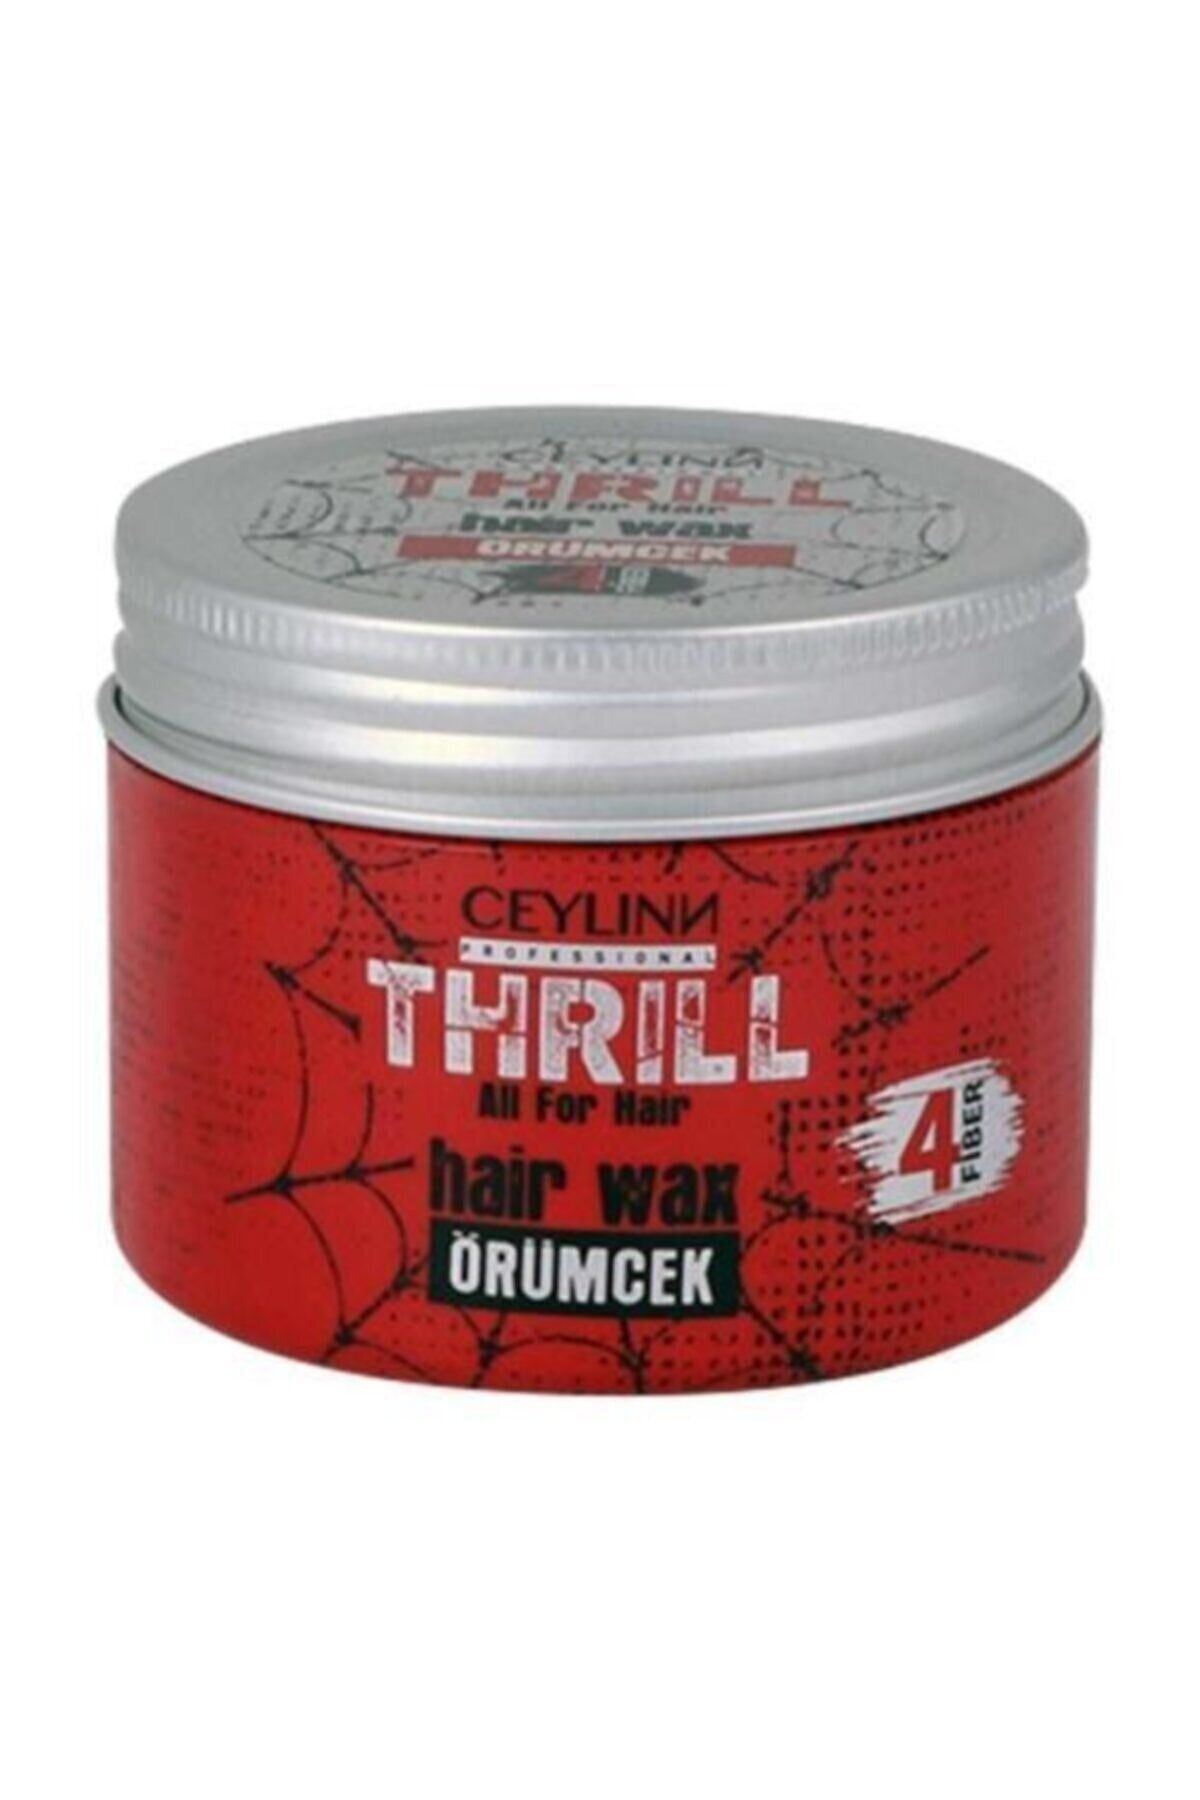 Ceylinn Thrill Fiber Örümcek Wax 150 ml